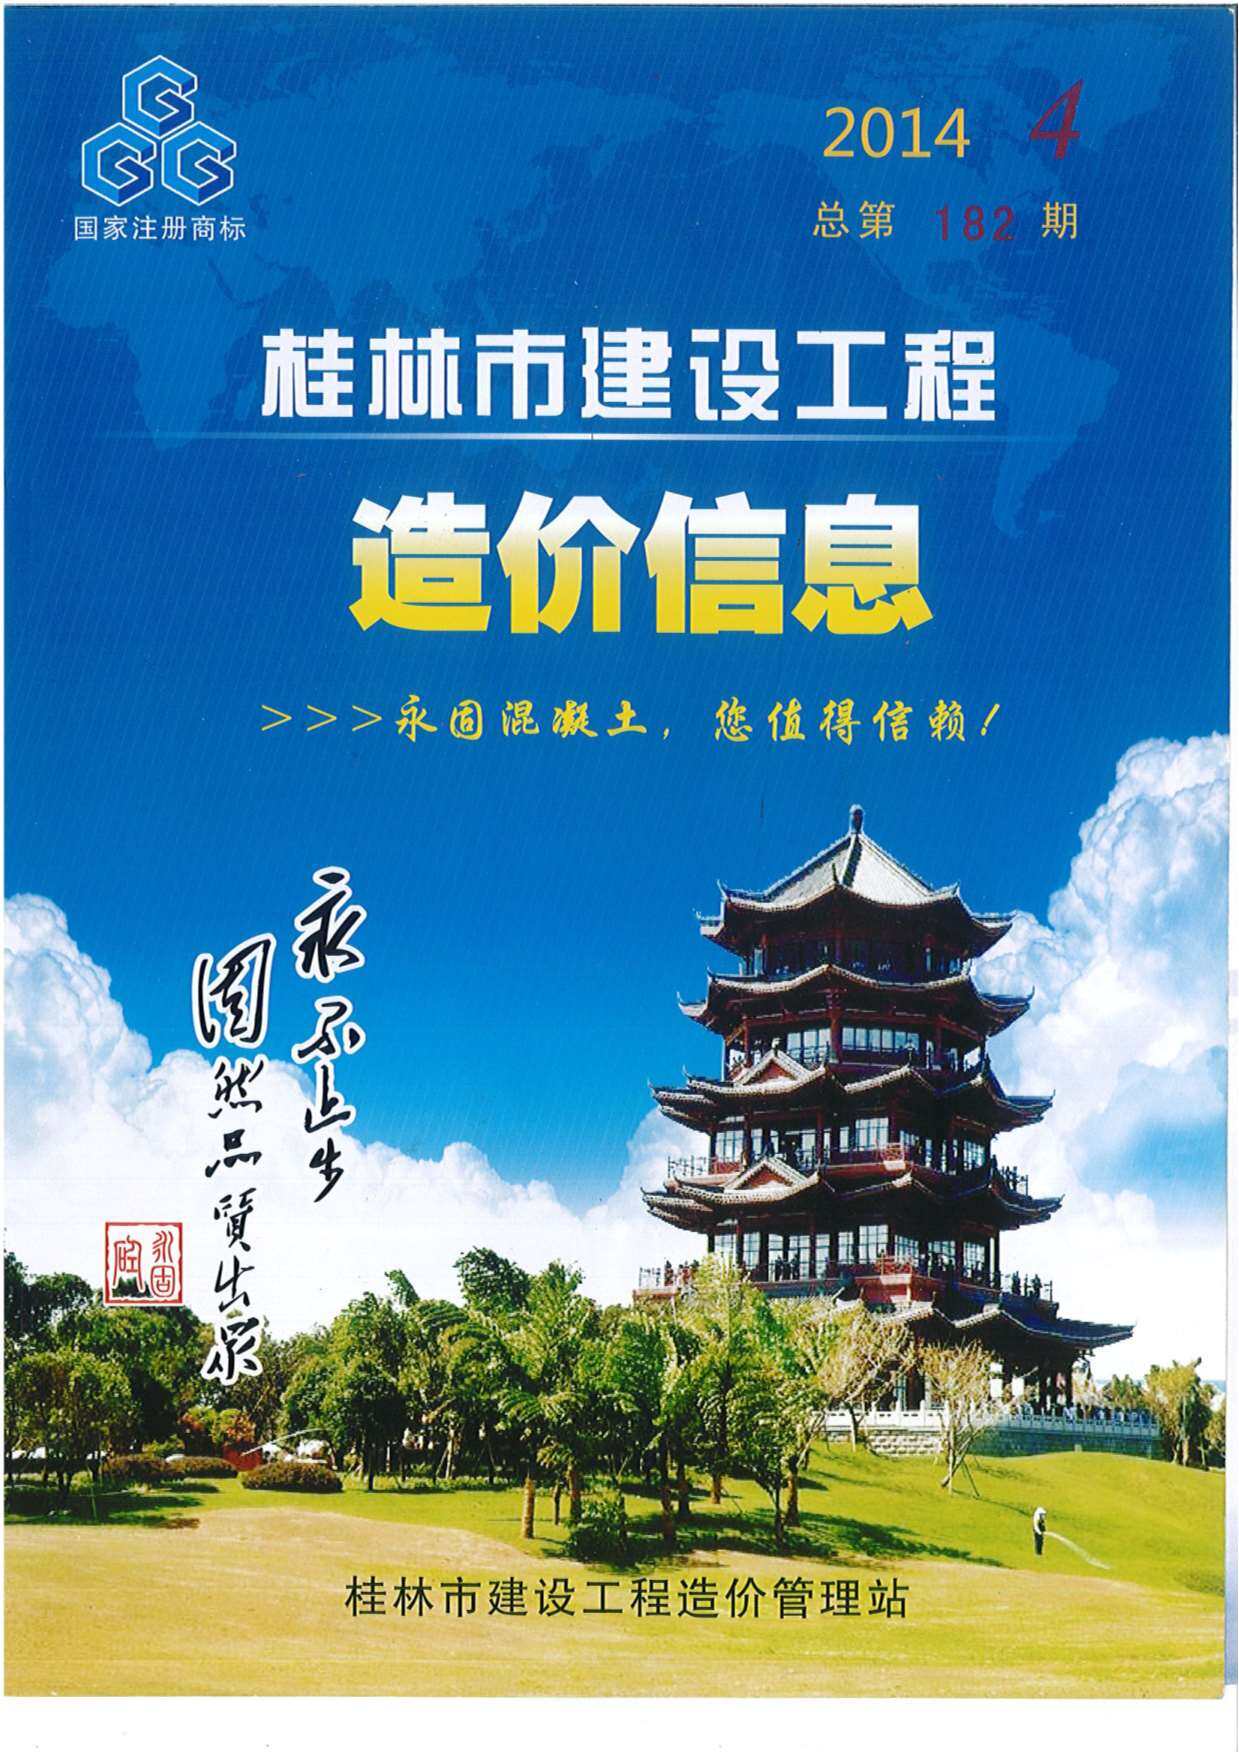 桂林市2014年4月工程造价信息期刊